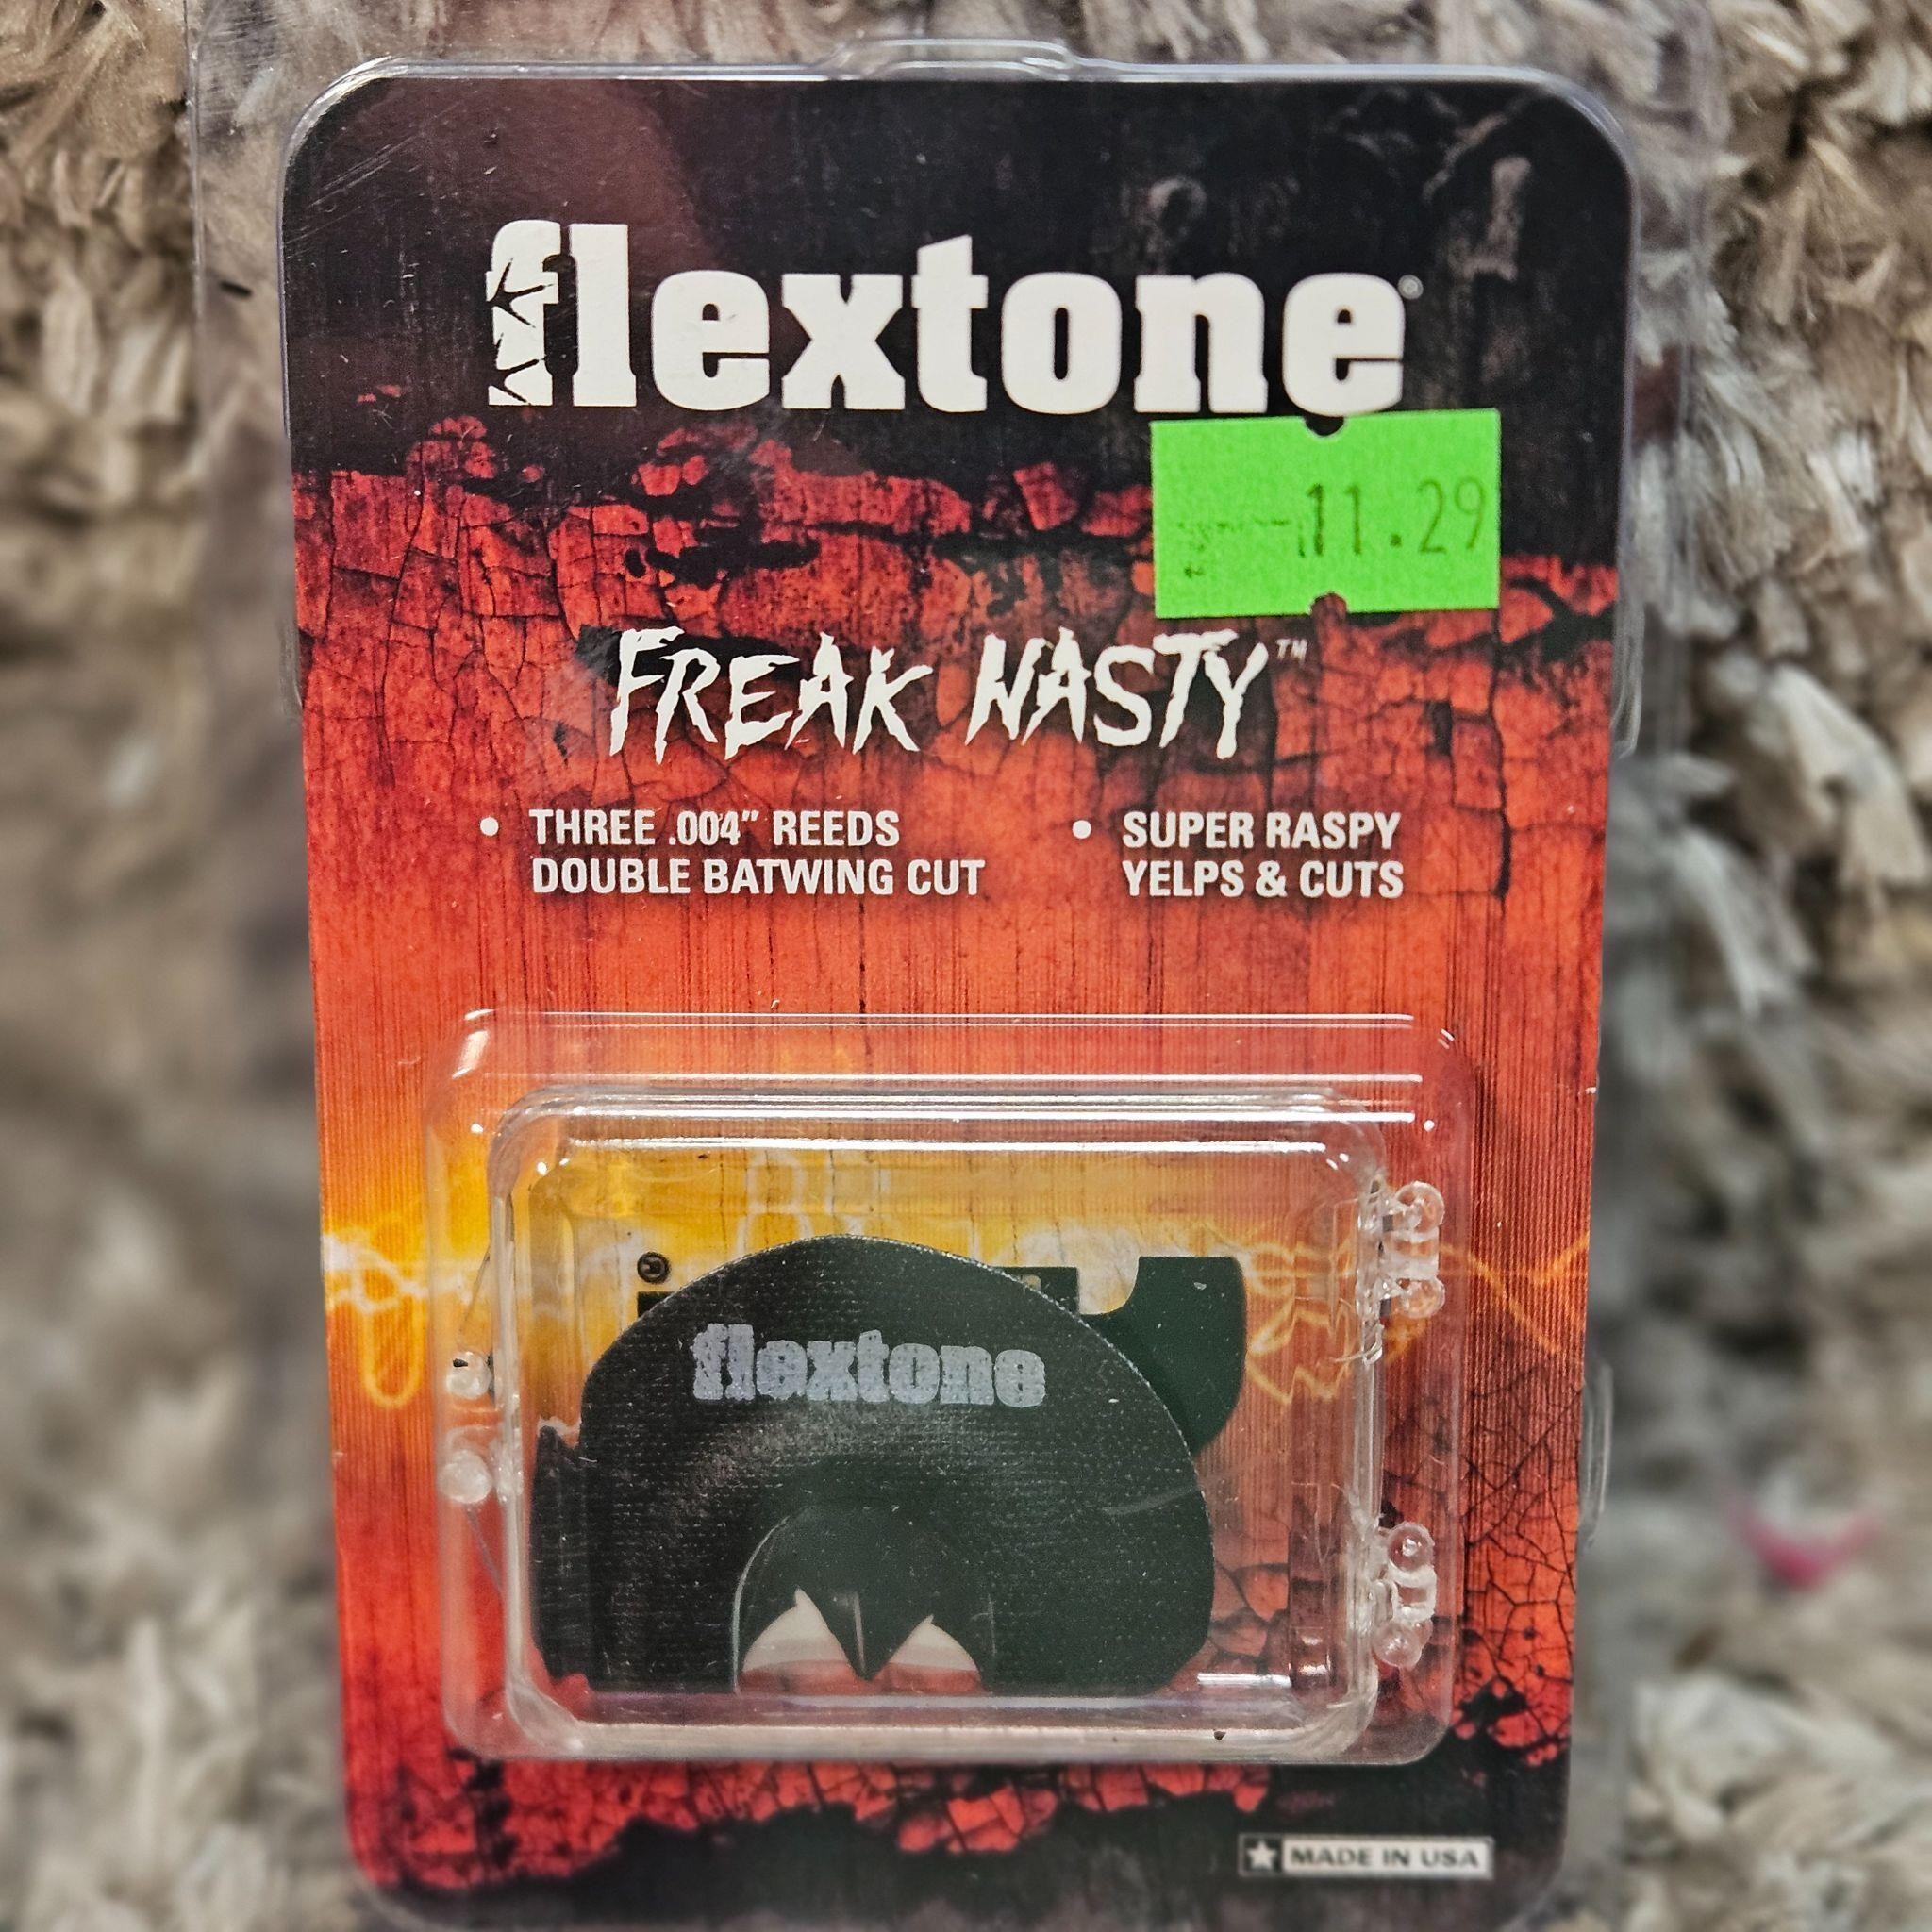 Flex Tone Freak Nasty Retail $11.29